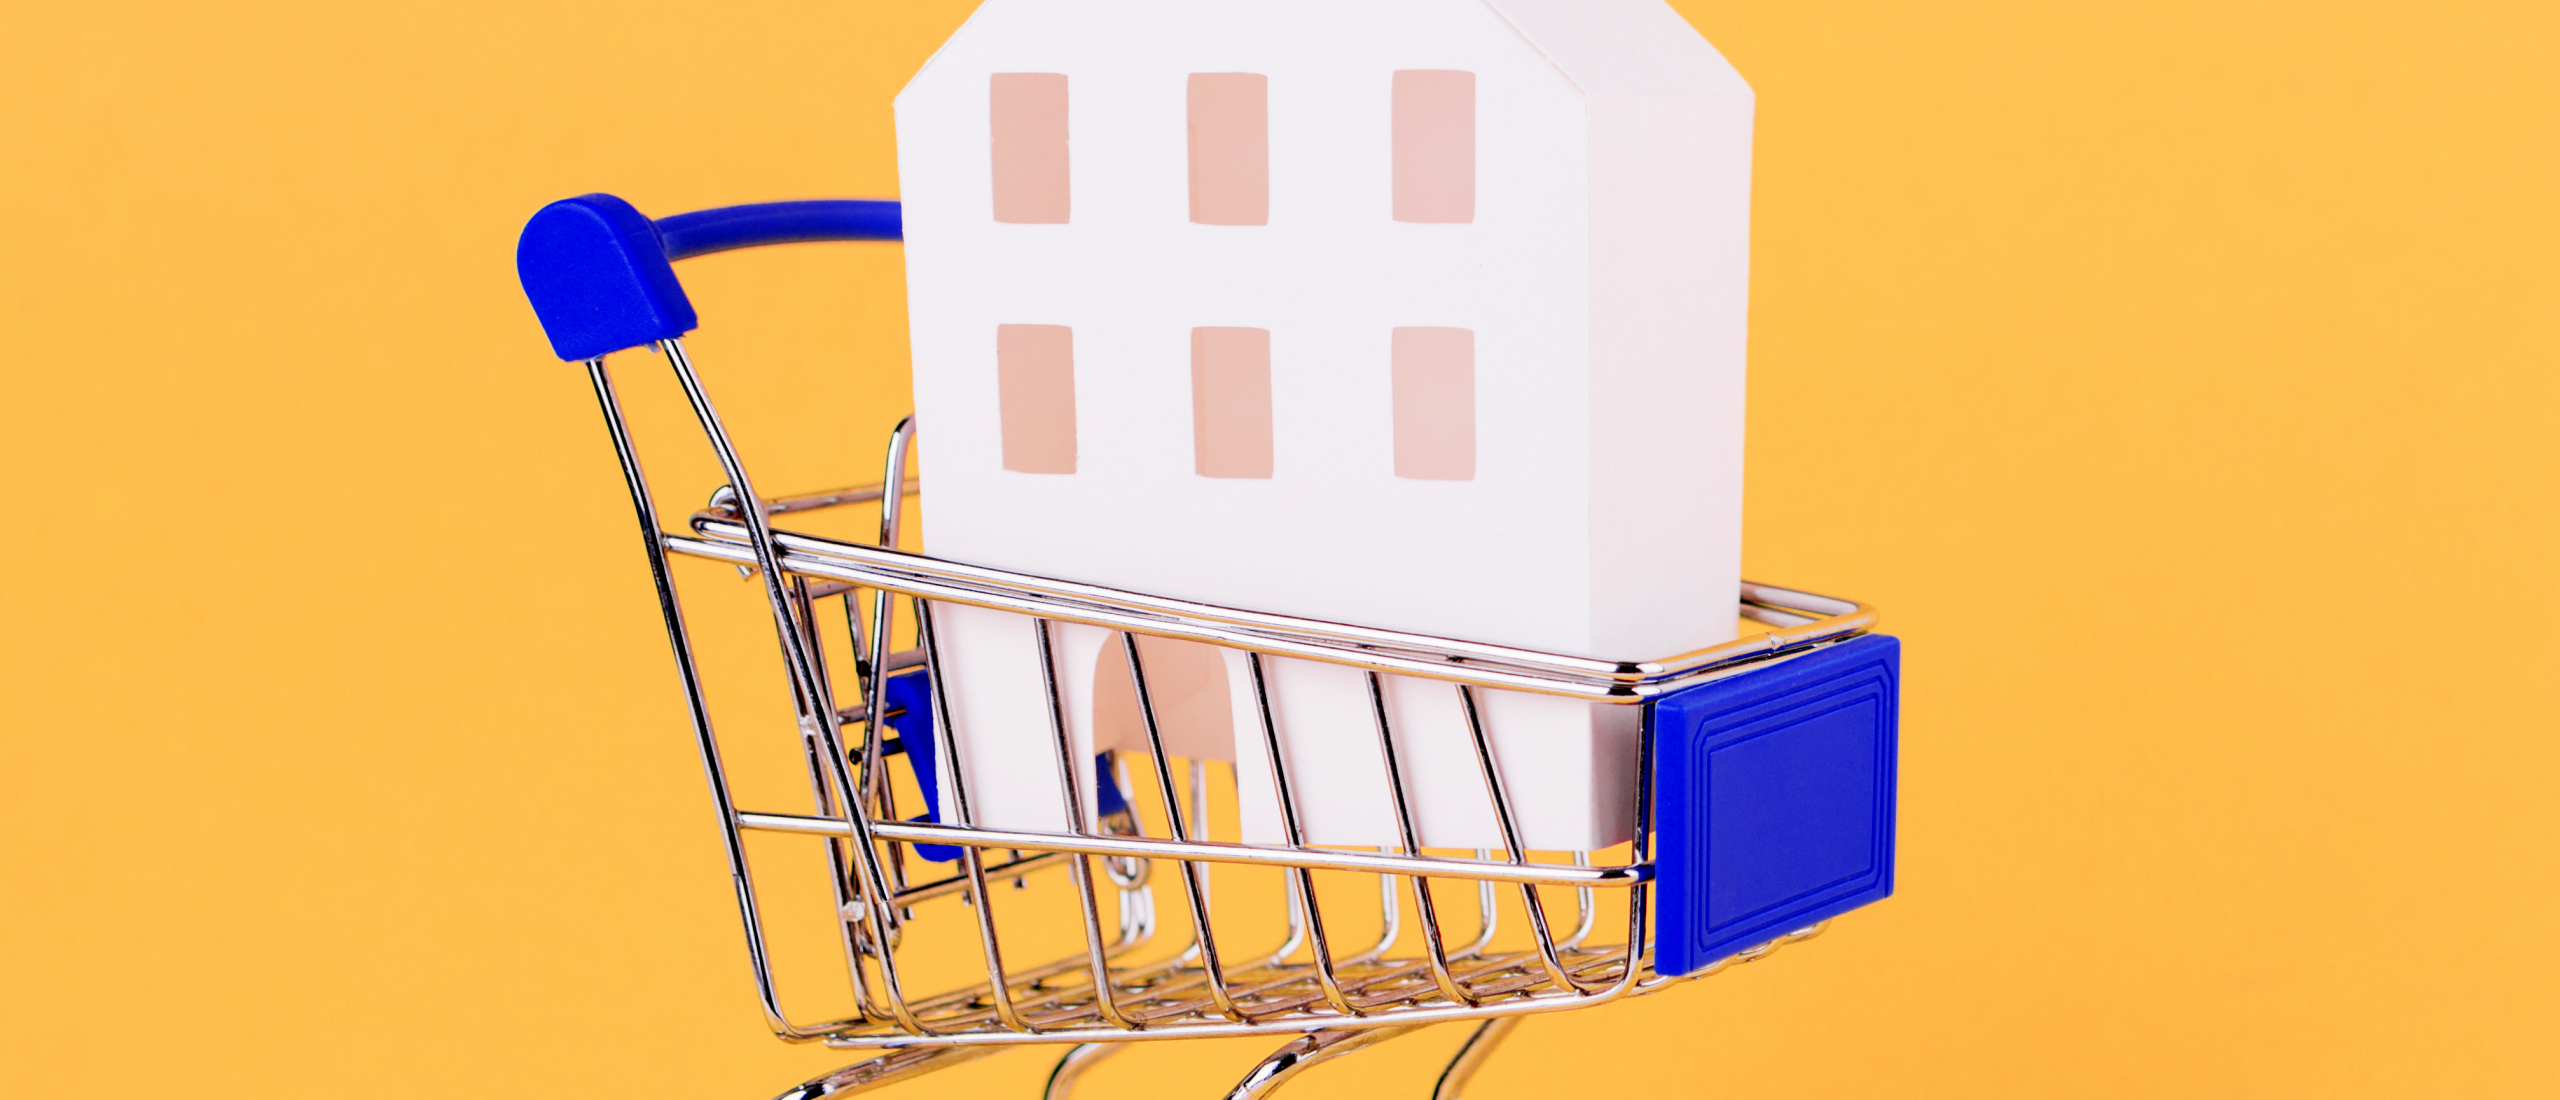 Verbeterplan woningmarkt moet vertrouwen in het koopproces huis herstellen